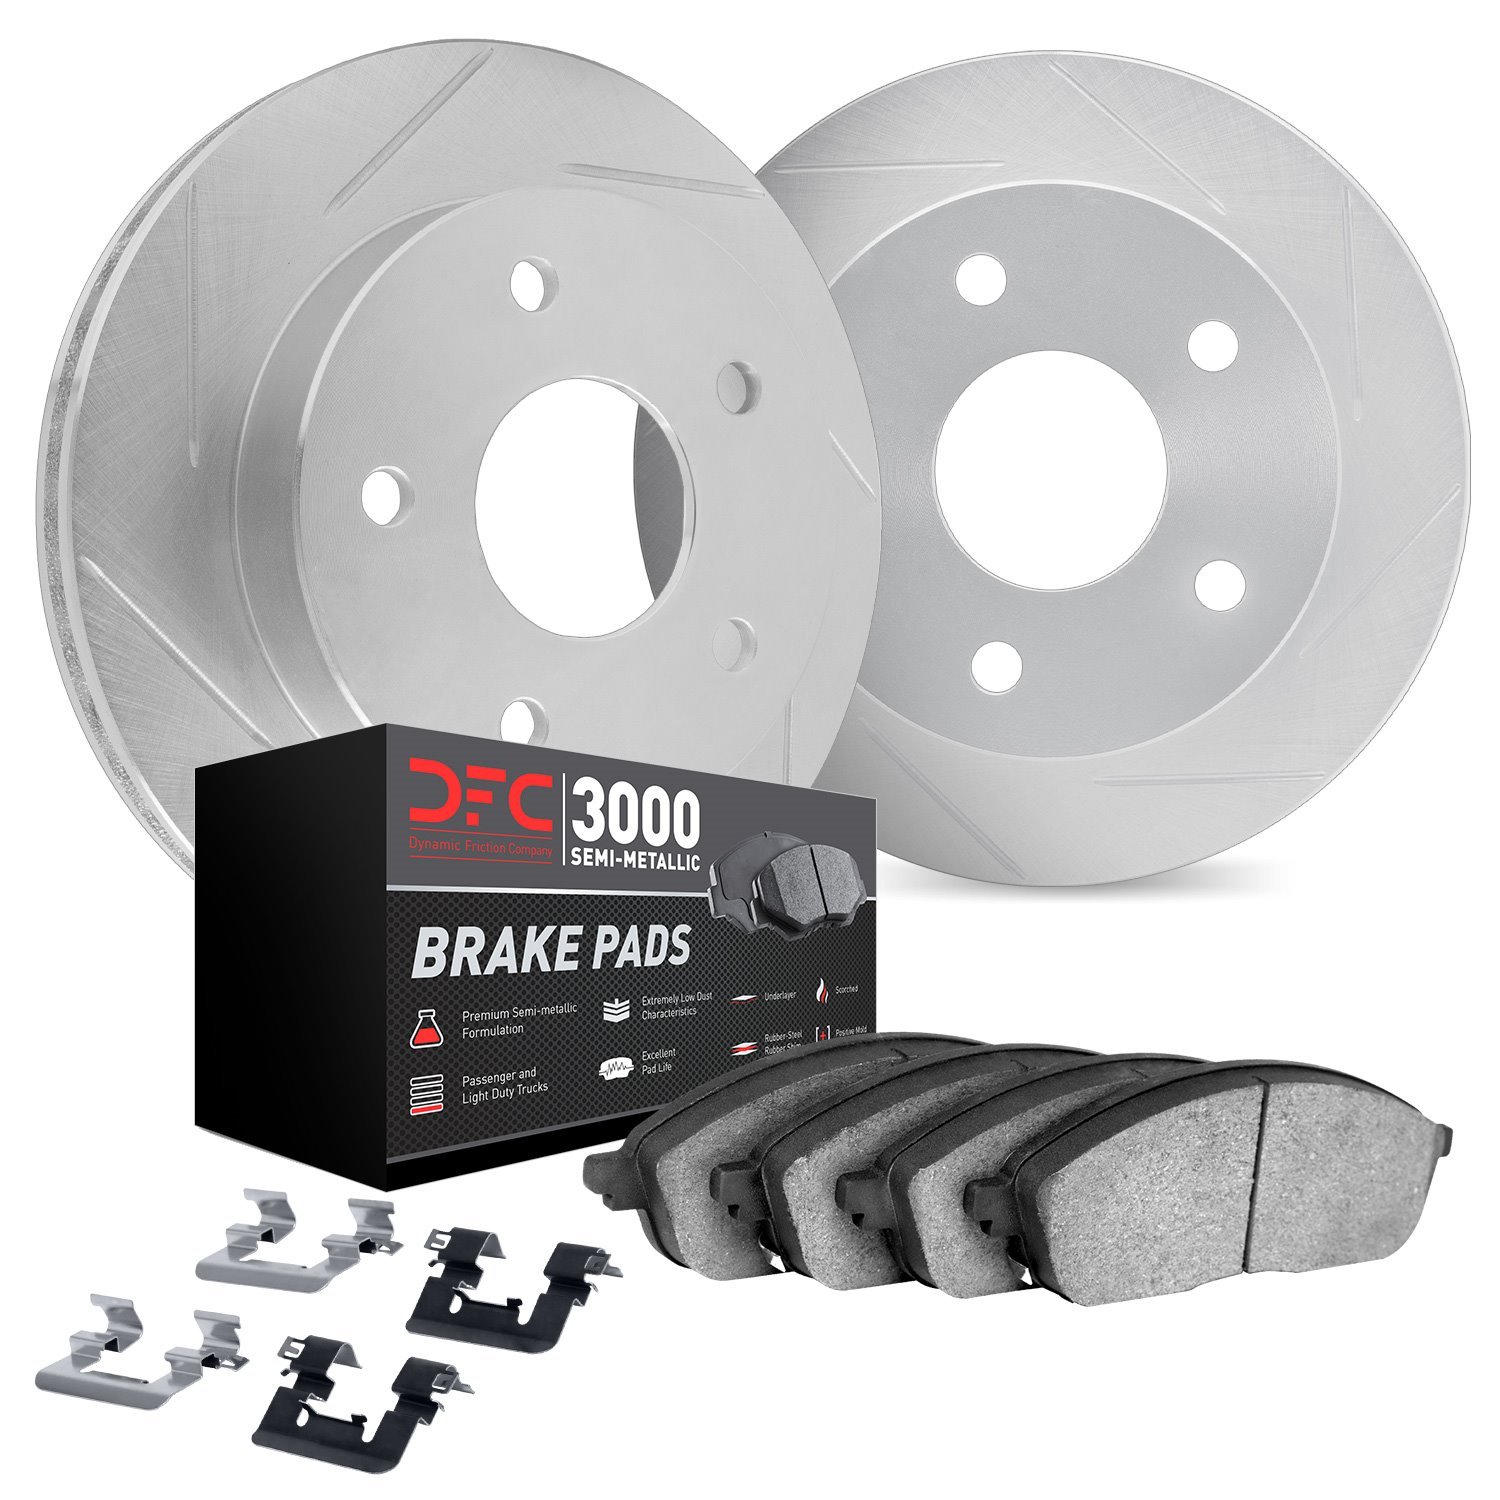 5112-76164 Slotted Brake Rotors with 3000-Series Semi-Metallic Brake Pads Kit & Hardware [Silver], 2008-2021 Lexus/Toyota/Scion,